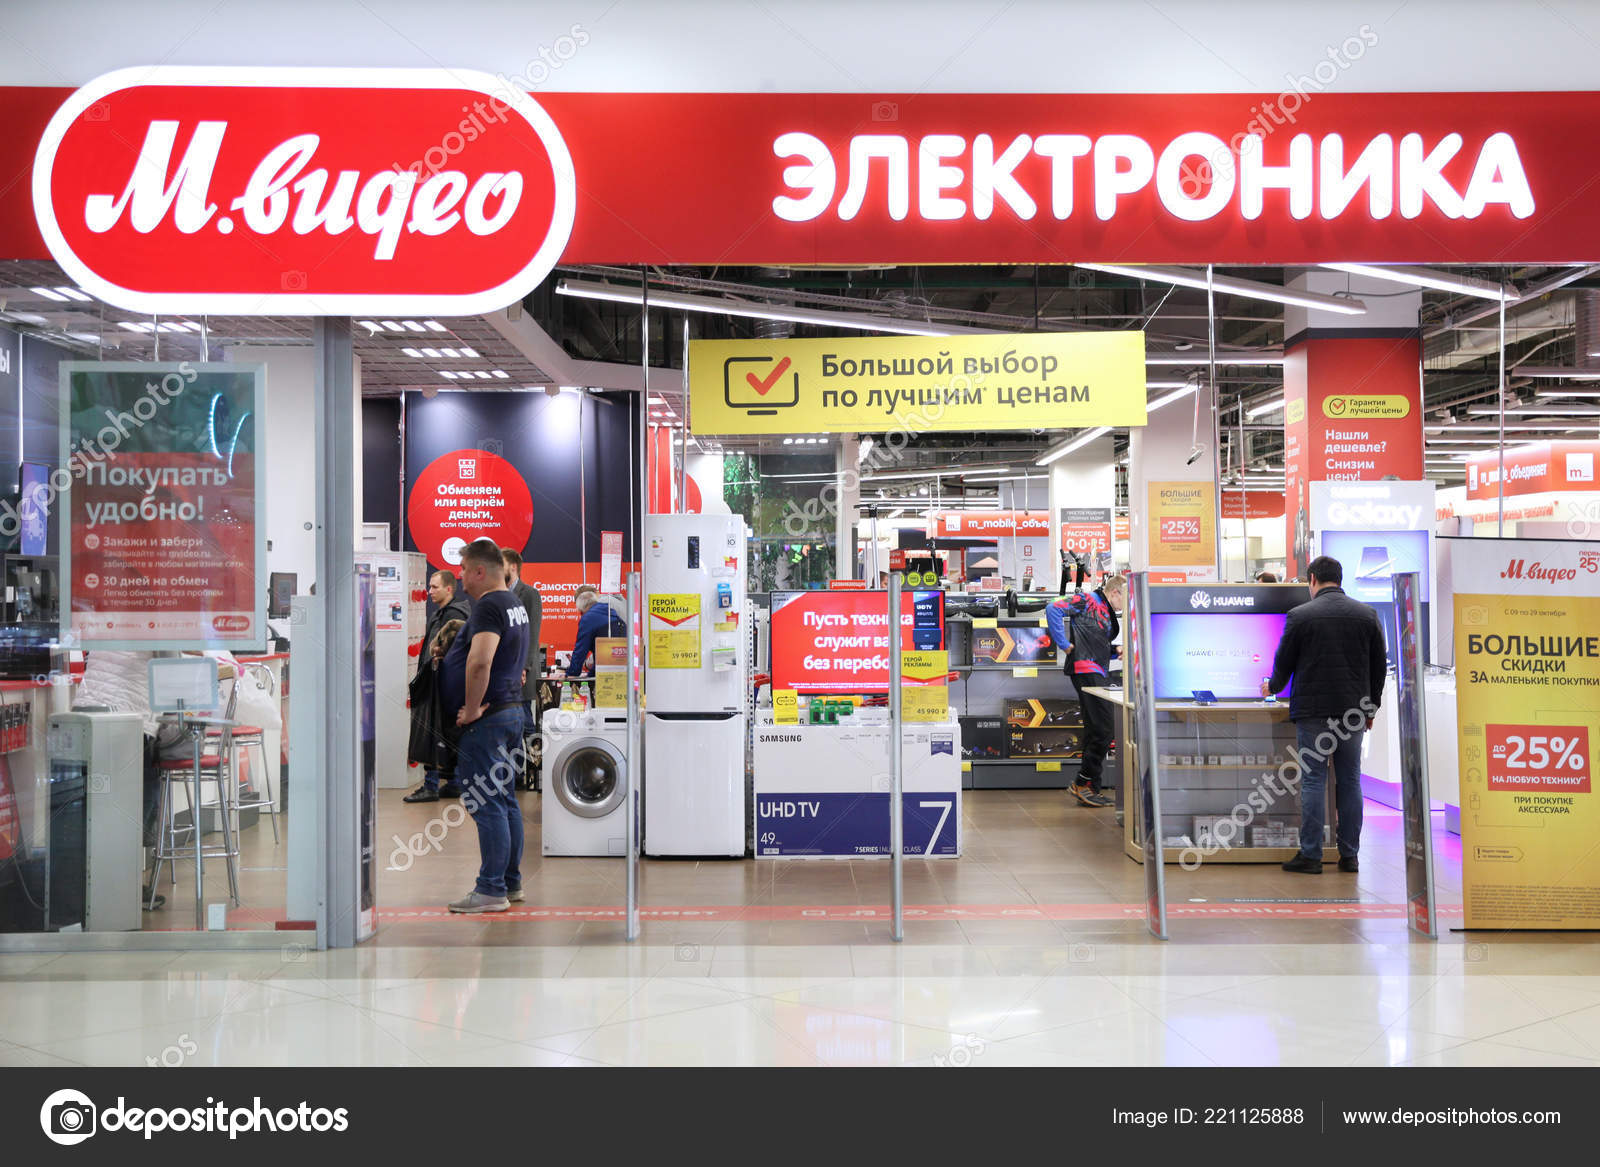 Магазины Бытовой Москвы